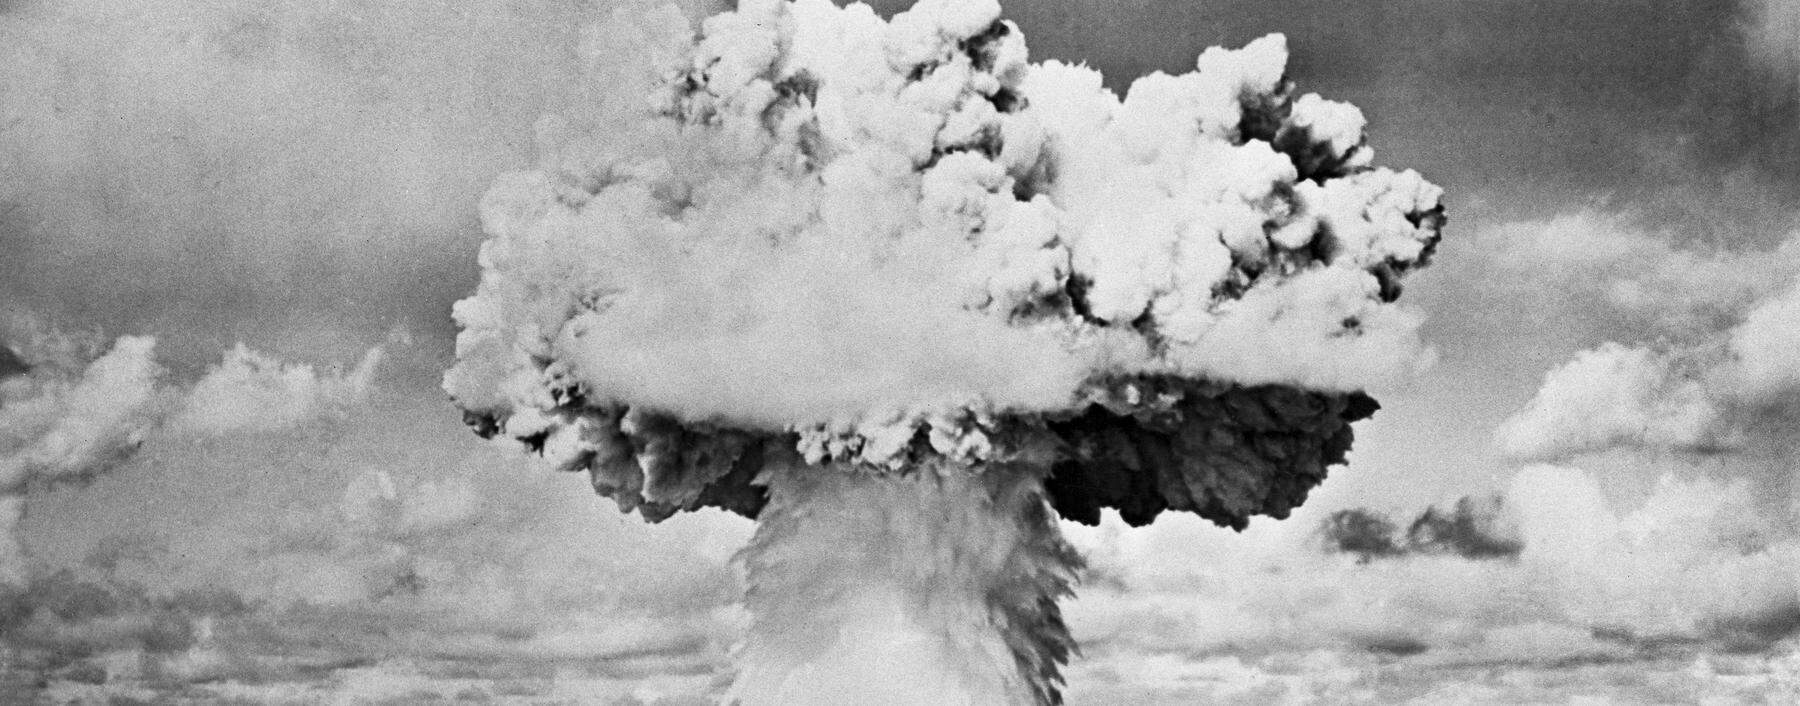 Der erste Atombombentest 1946 auf dem Bikini-Atoll. Markiert er auch den Beginn einer neuen erdgeschichtlichen Ära?